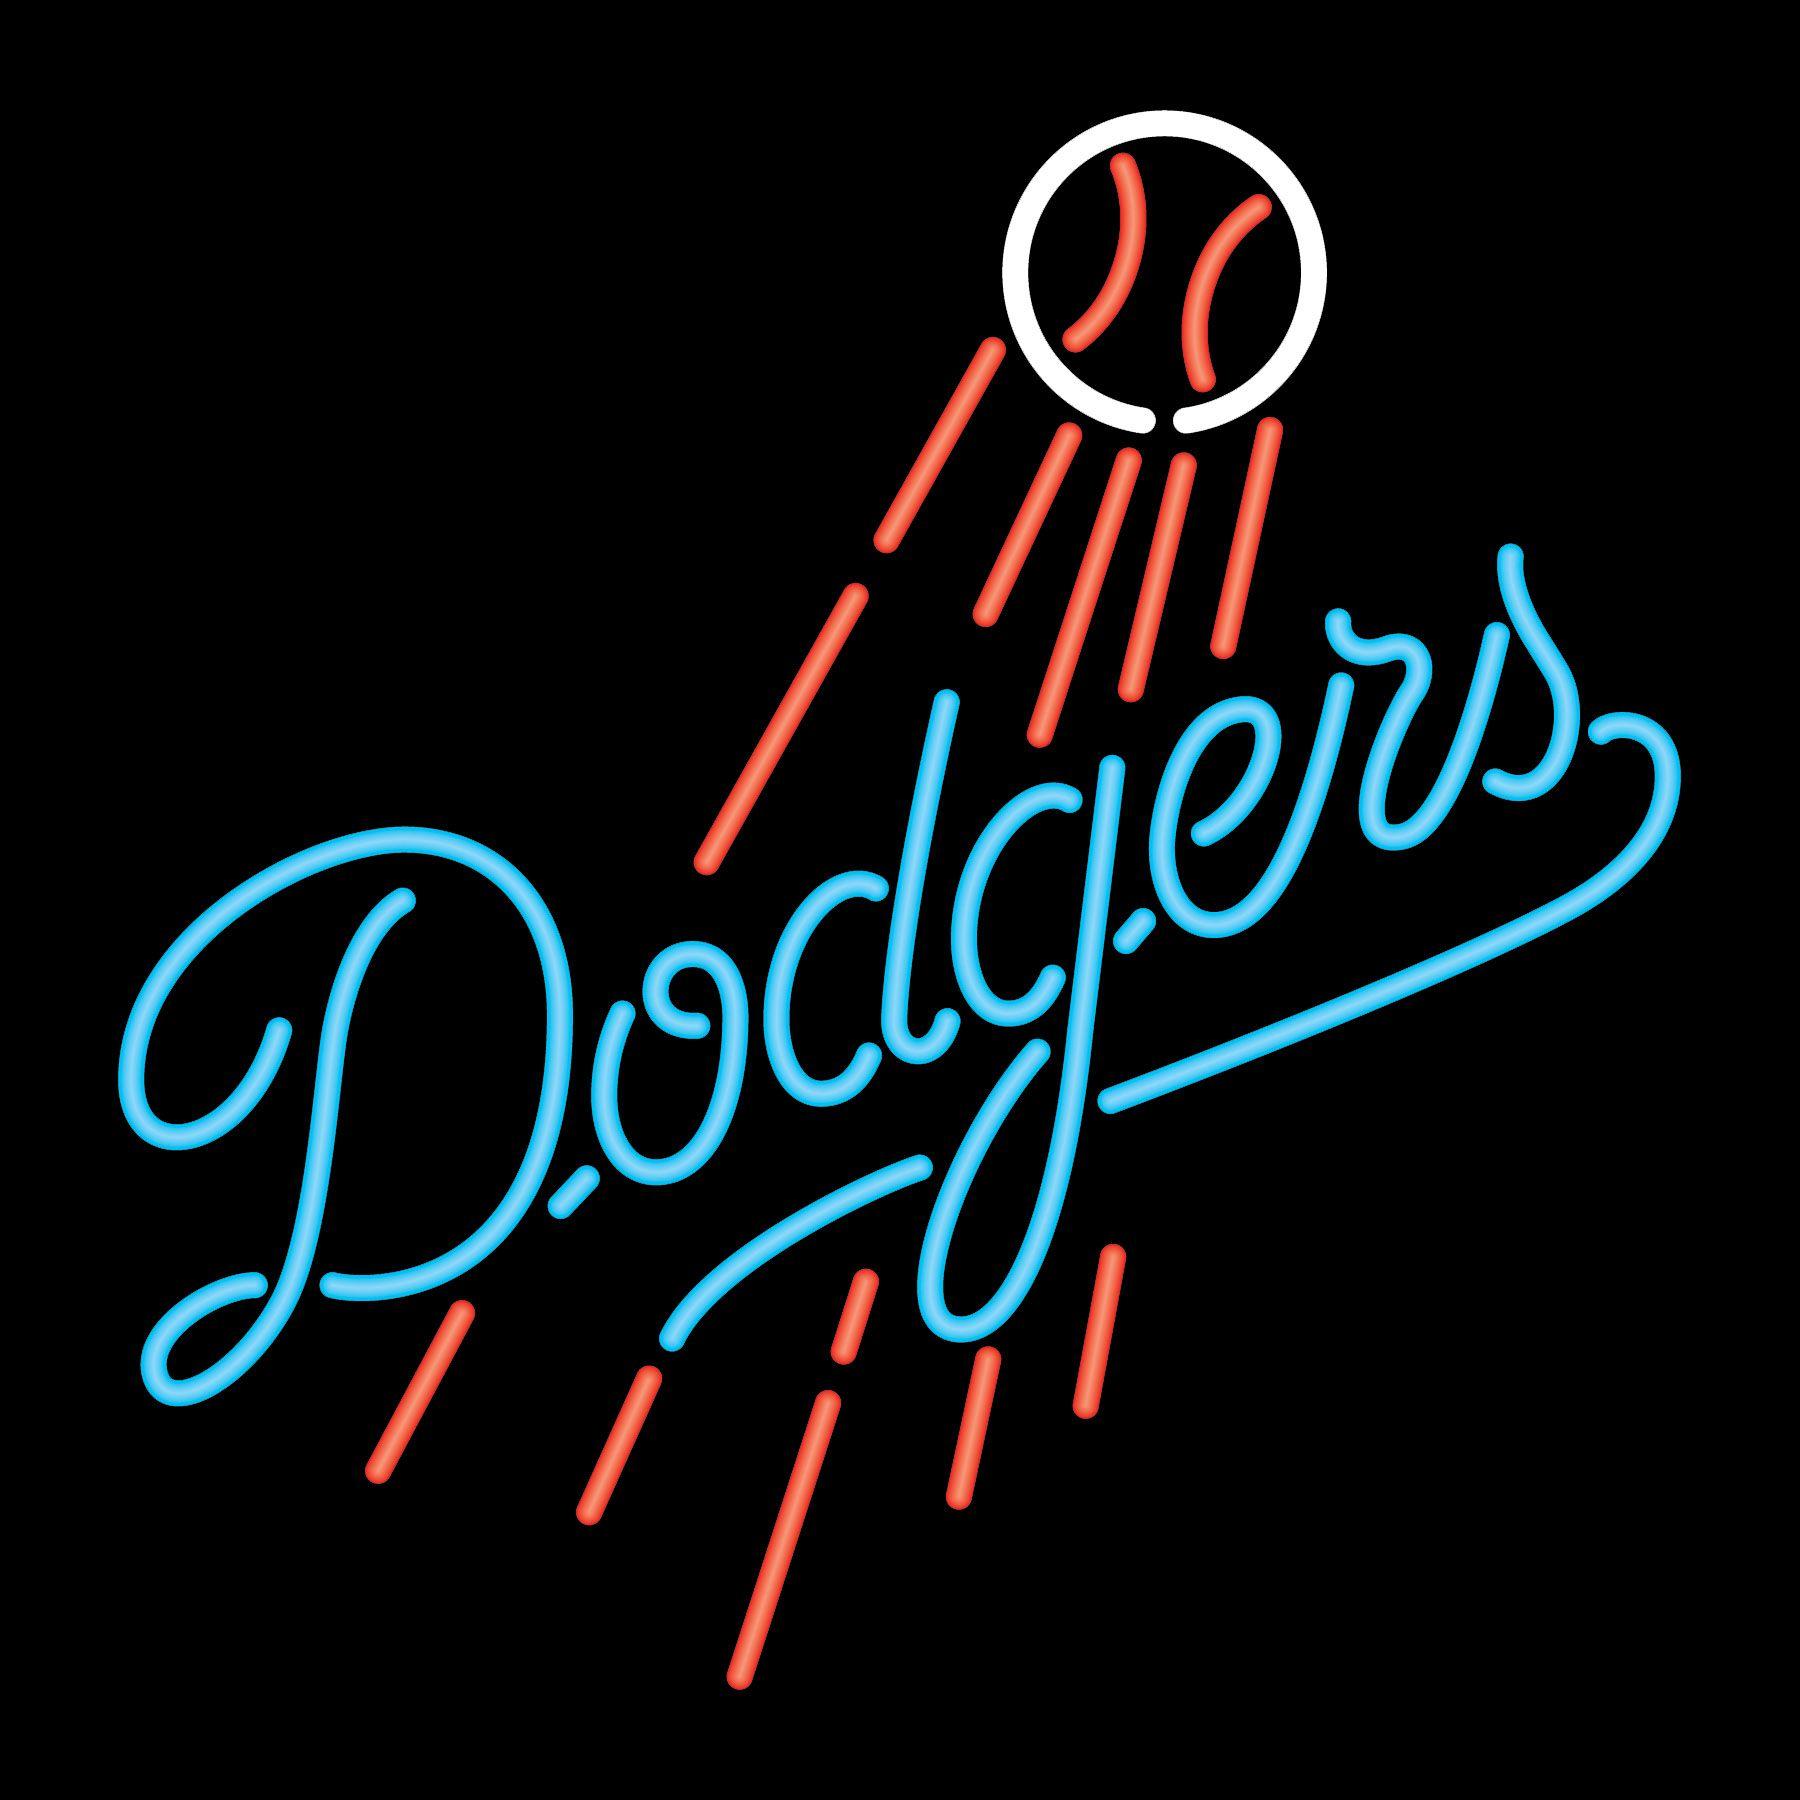 Dodgers HD wallpaper